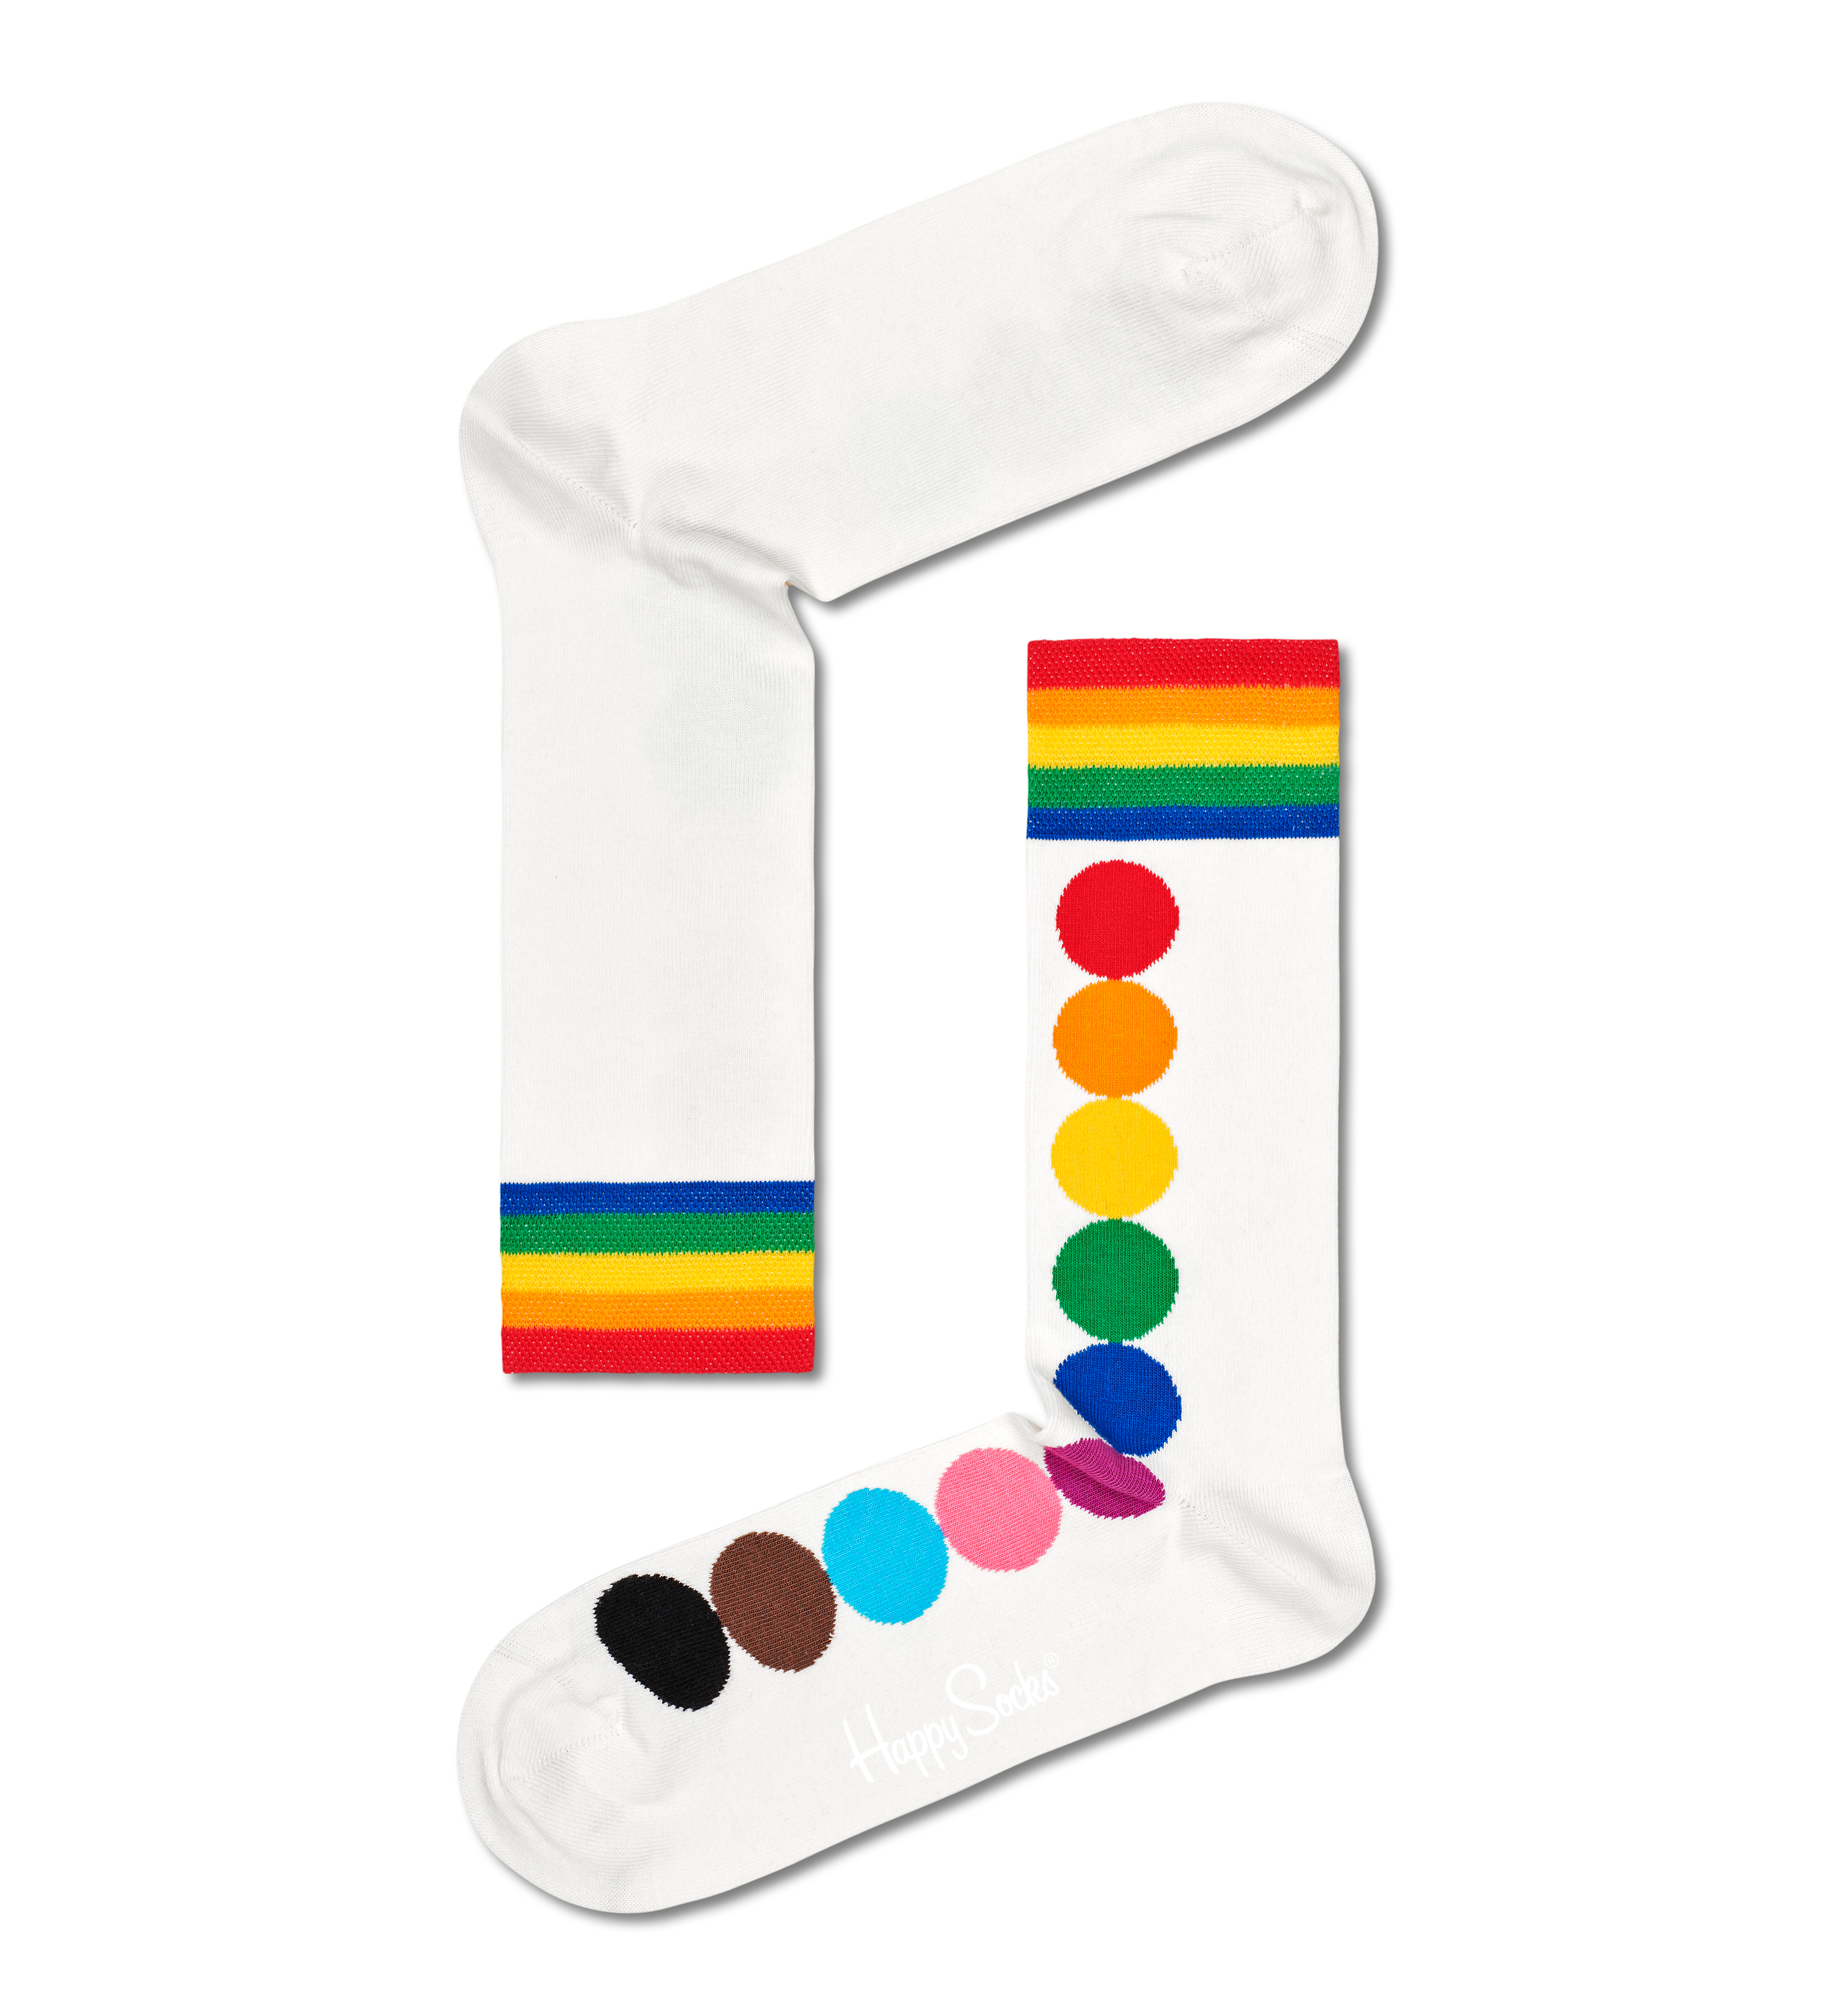 3-Pack Pride Crew Gift Set | Happy Socks US